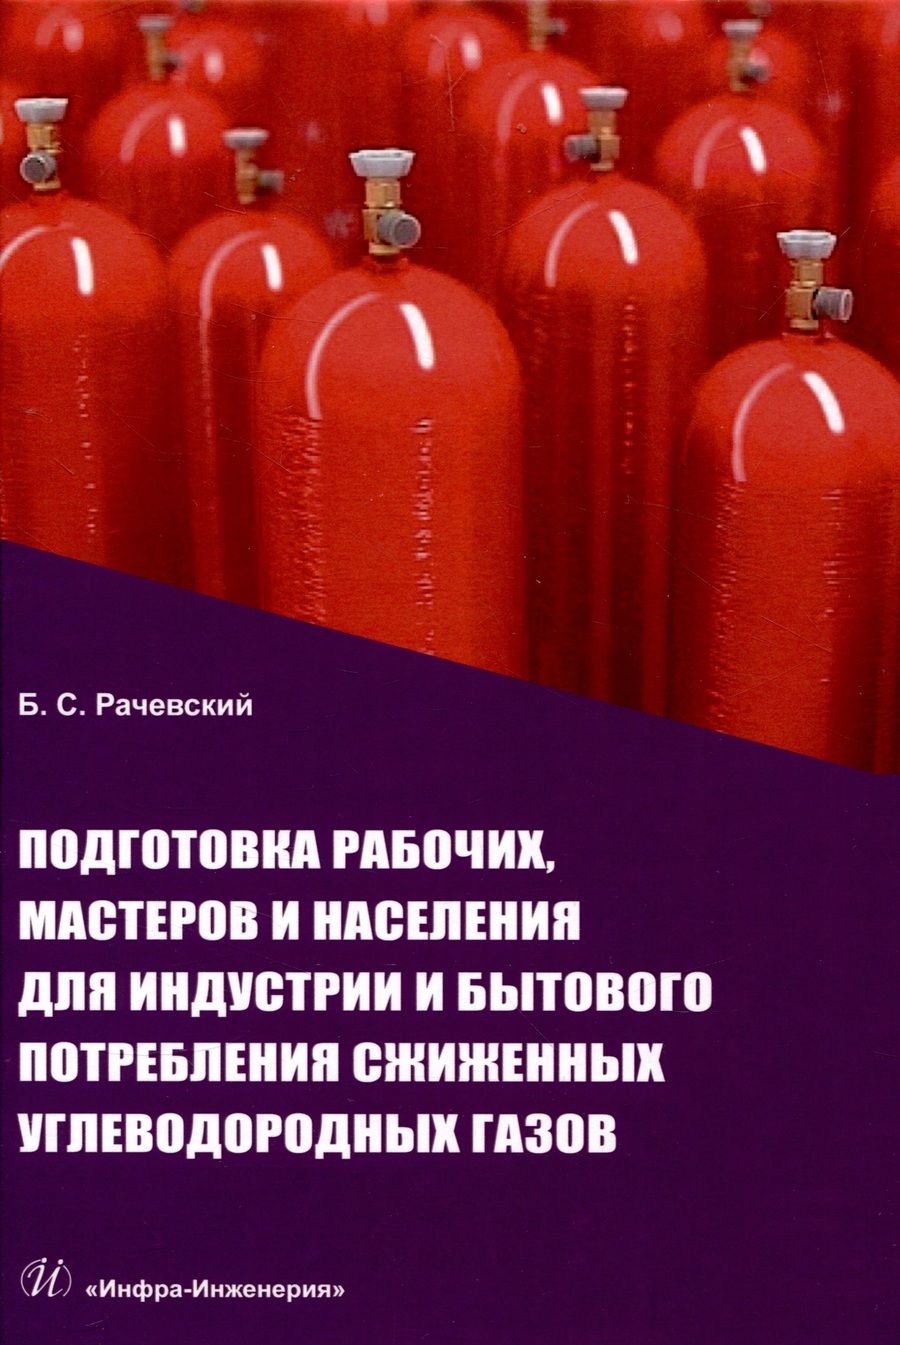 Обложка книги "Рачевский: Подготовка рабочих,мастеров и населения для индустрии и бытового потребления сжиженных углевод.газов"